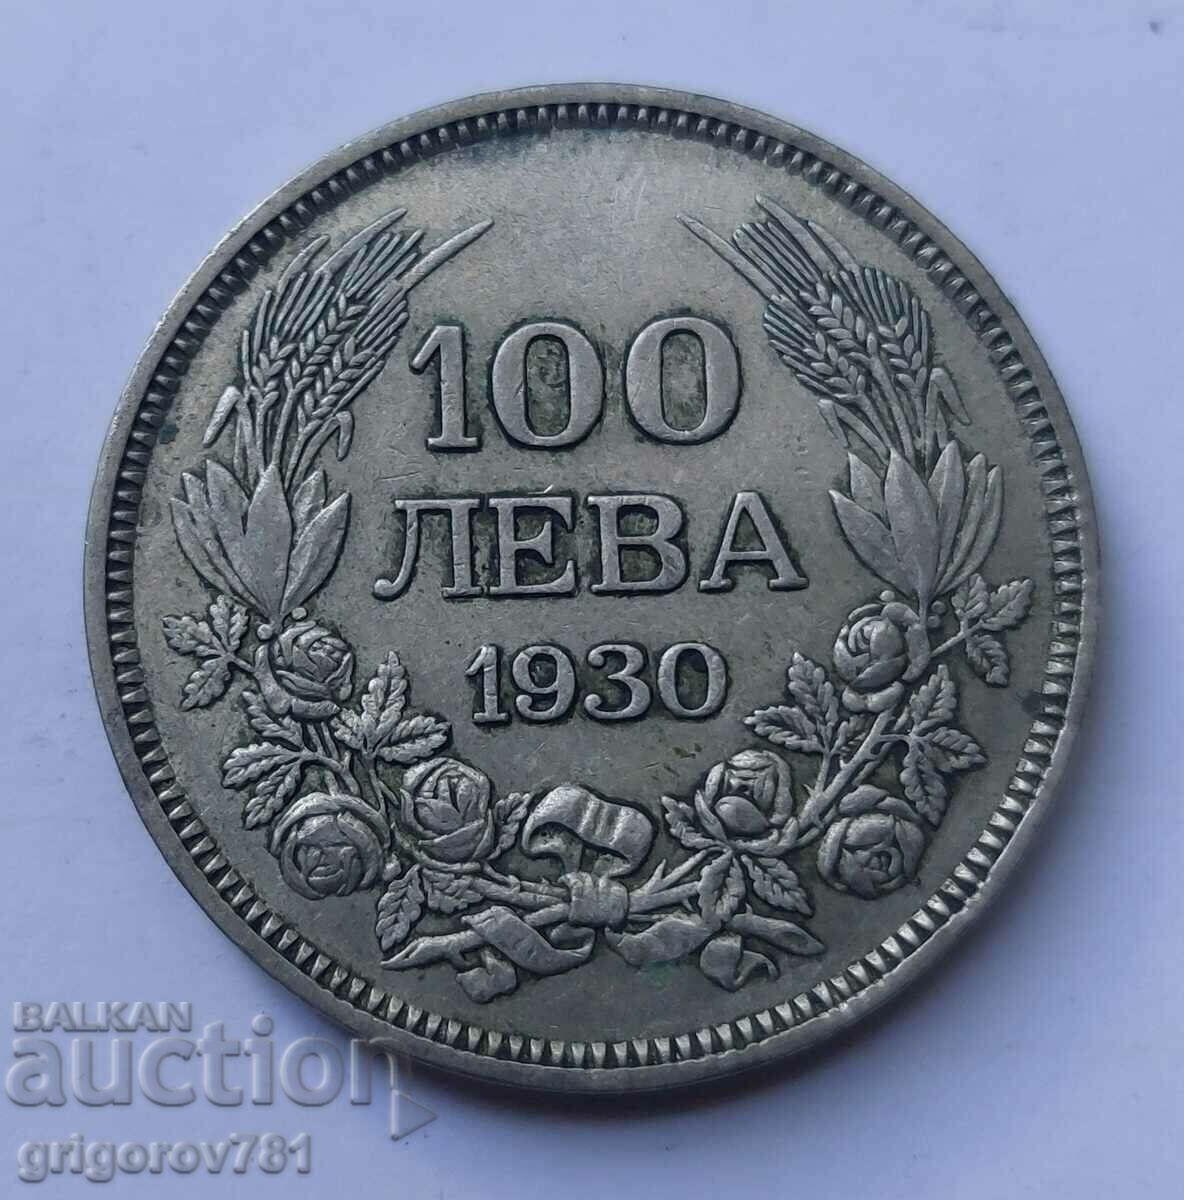 100 leva argint Bulgaria 1930 - monedă de argint #30